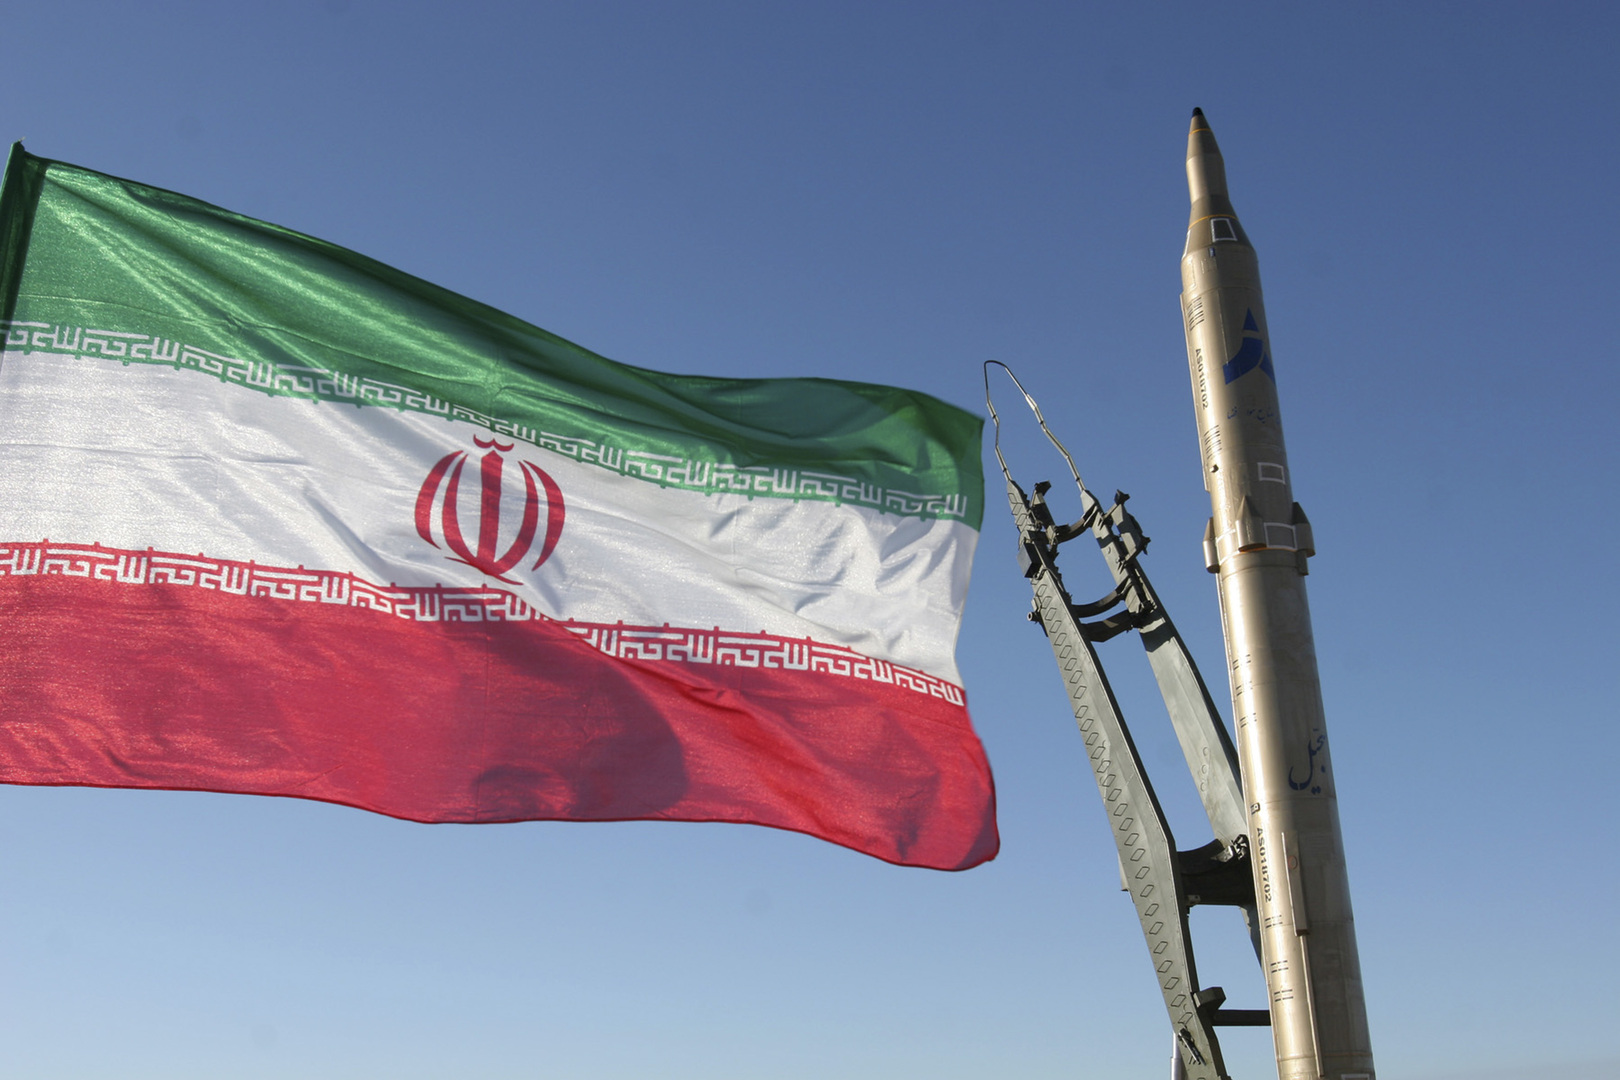 إيران تعلن تصنيع صواريخ باليستية بسرعة 8 ماخ لتدمير الأهداف البحرية المتحركة بمدى 1500 كلم